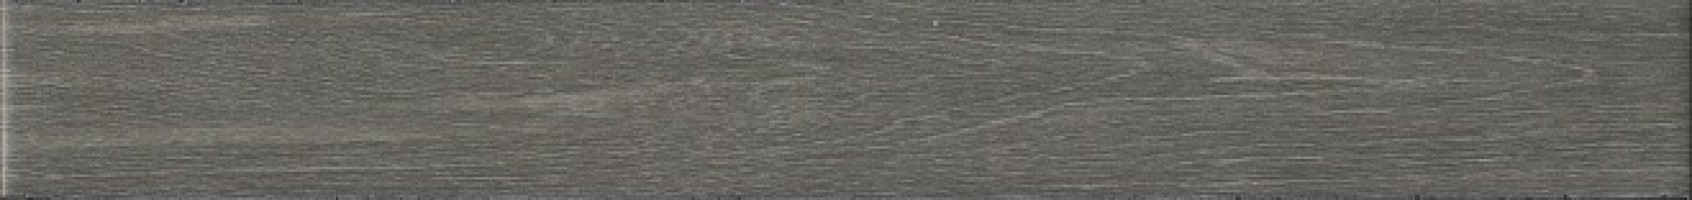 Бордюр Kerama Marazzi Кассетоне серый матовый 30.2x3.5 VT/C368/SG9174